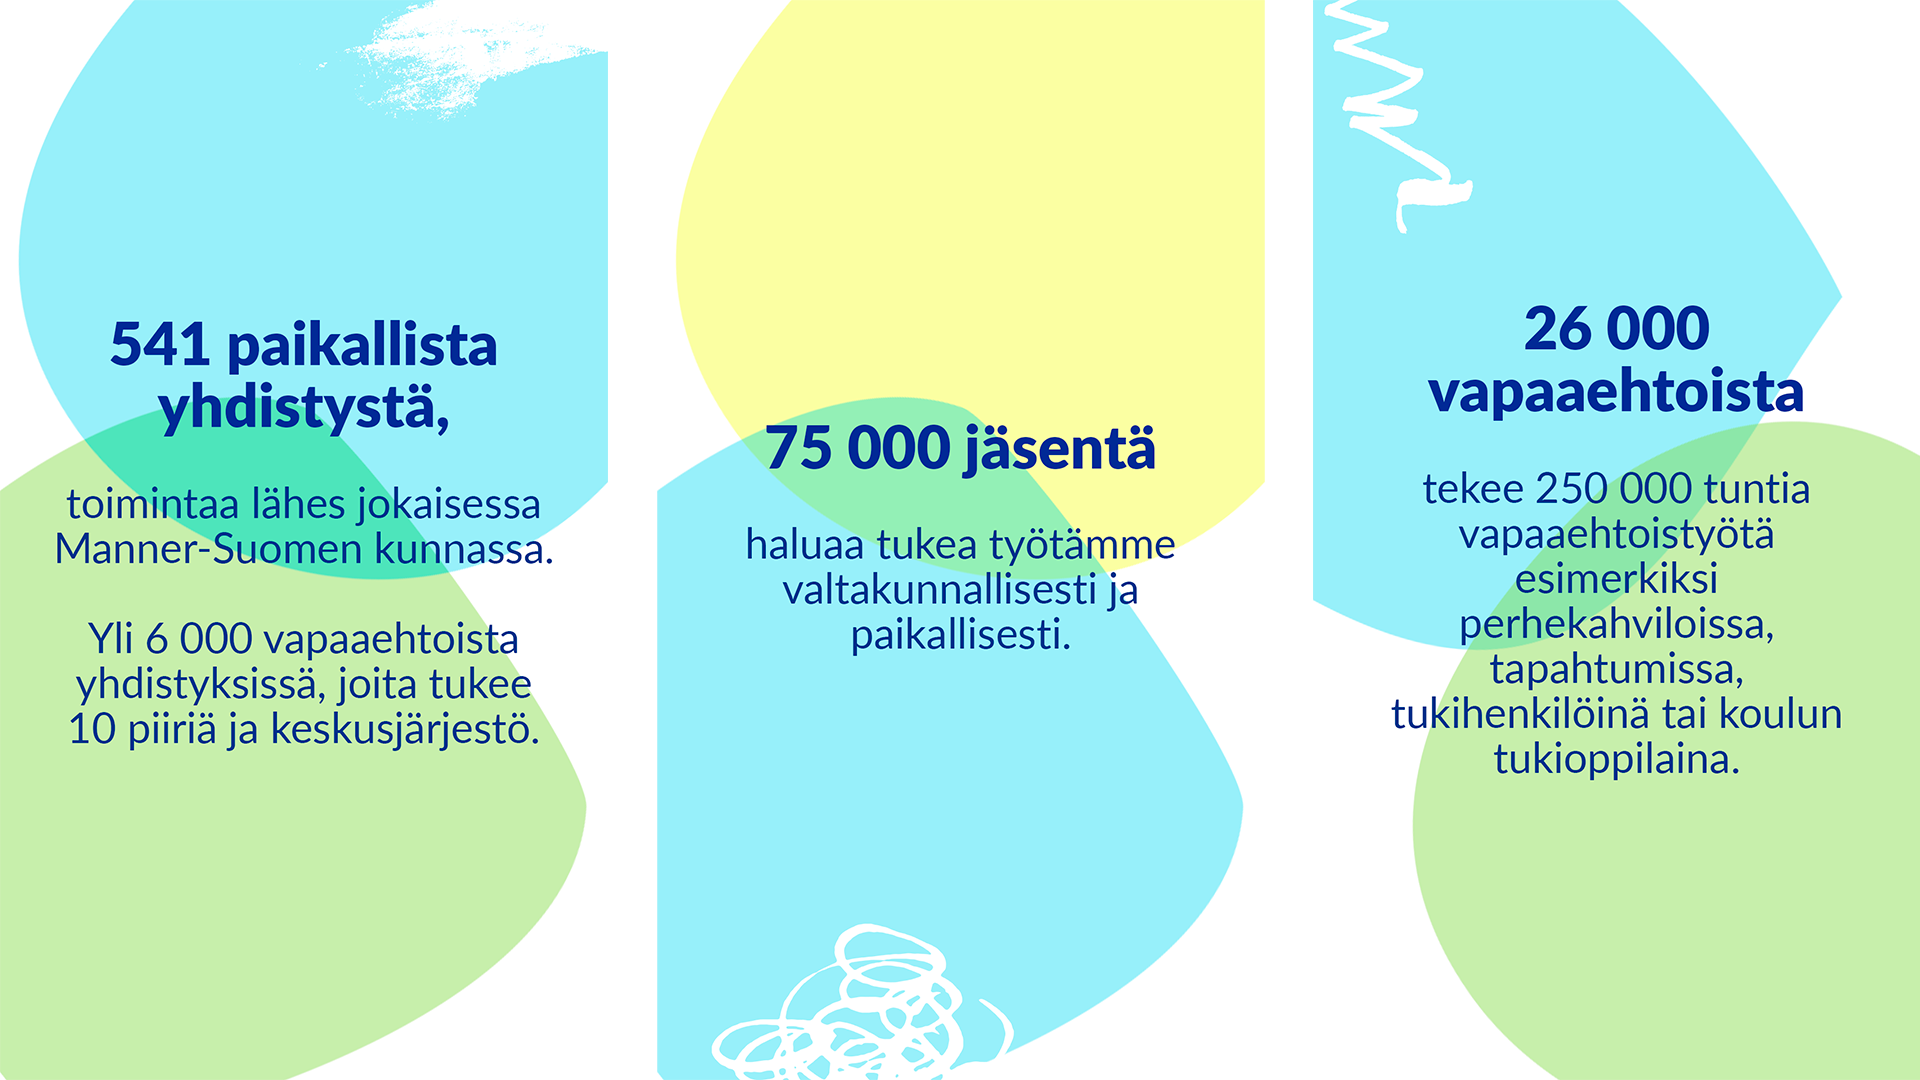 Kolme tekstikuvaa, joissa on sinisiä, keltaisia ja vihreitä päällekkäisiä muotoja. Ensimmäisessä kuvassa lukee seuraava teksti: 541 paikallista yhdistystä, toimintaa lähes jokaisessa Manner-Suomen kunnassa. 6 000 vapaaehtoista yhdistyksissä, joita tukee 10 piiriä ja keskusjärjestö. Toisessa kuvassa lukee: 75 000 jäsentä haluaa tukea työtämme valtakunnallisesti ja paikallisesti. Kolmannessa kuvassa lukee: 26 000 vapaaehtoista tekee 250 000 tuntia vapaaehtoistyötä esimerkiksi perhekahviloissa, tapahtumissa, tukihenkilöinä tai koulun tukioppilaana.